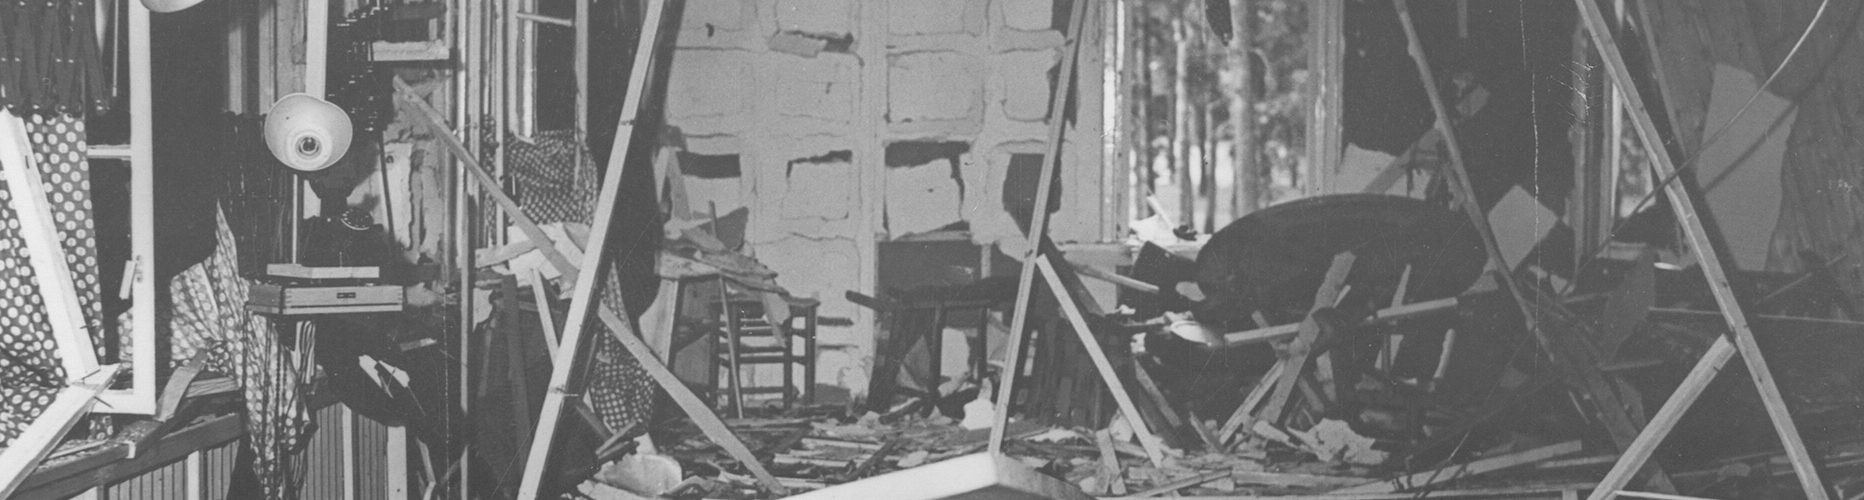 Skutki zamachu z 20 lipca 1944. Zniszczone pomieszczenie, w którym próbowano zgładzić Hitlera